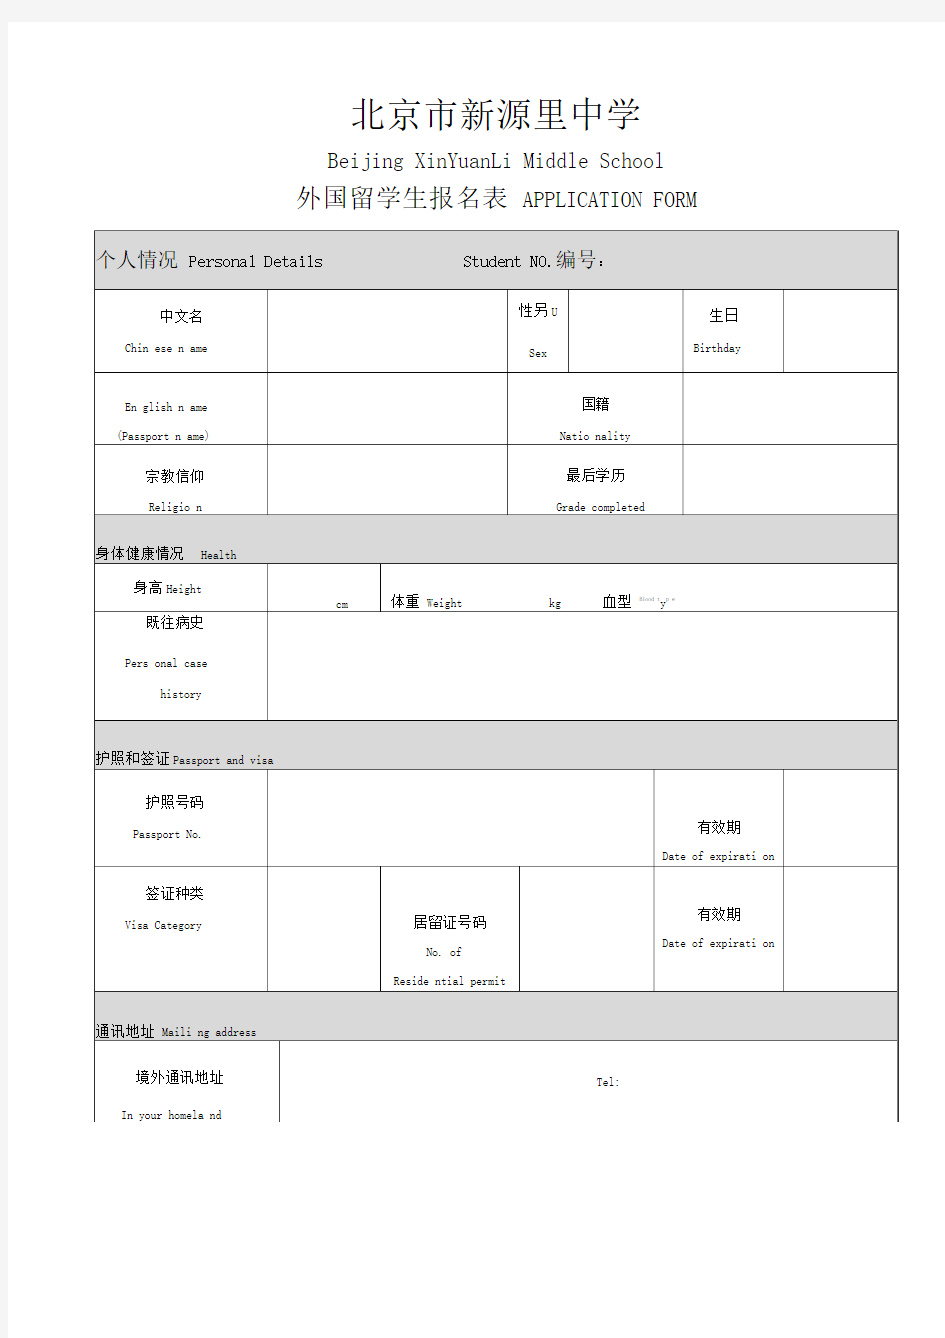 北京市新源里中学外籍学生入学申请登记表